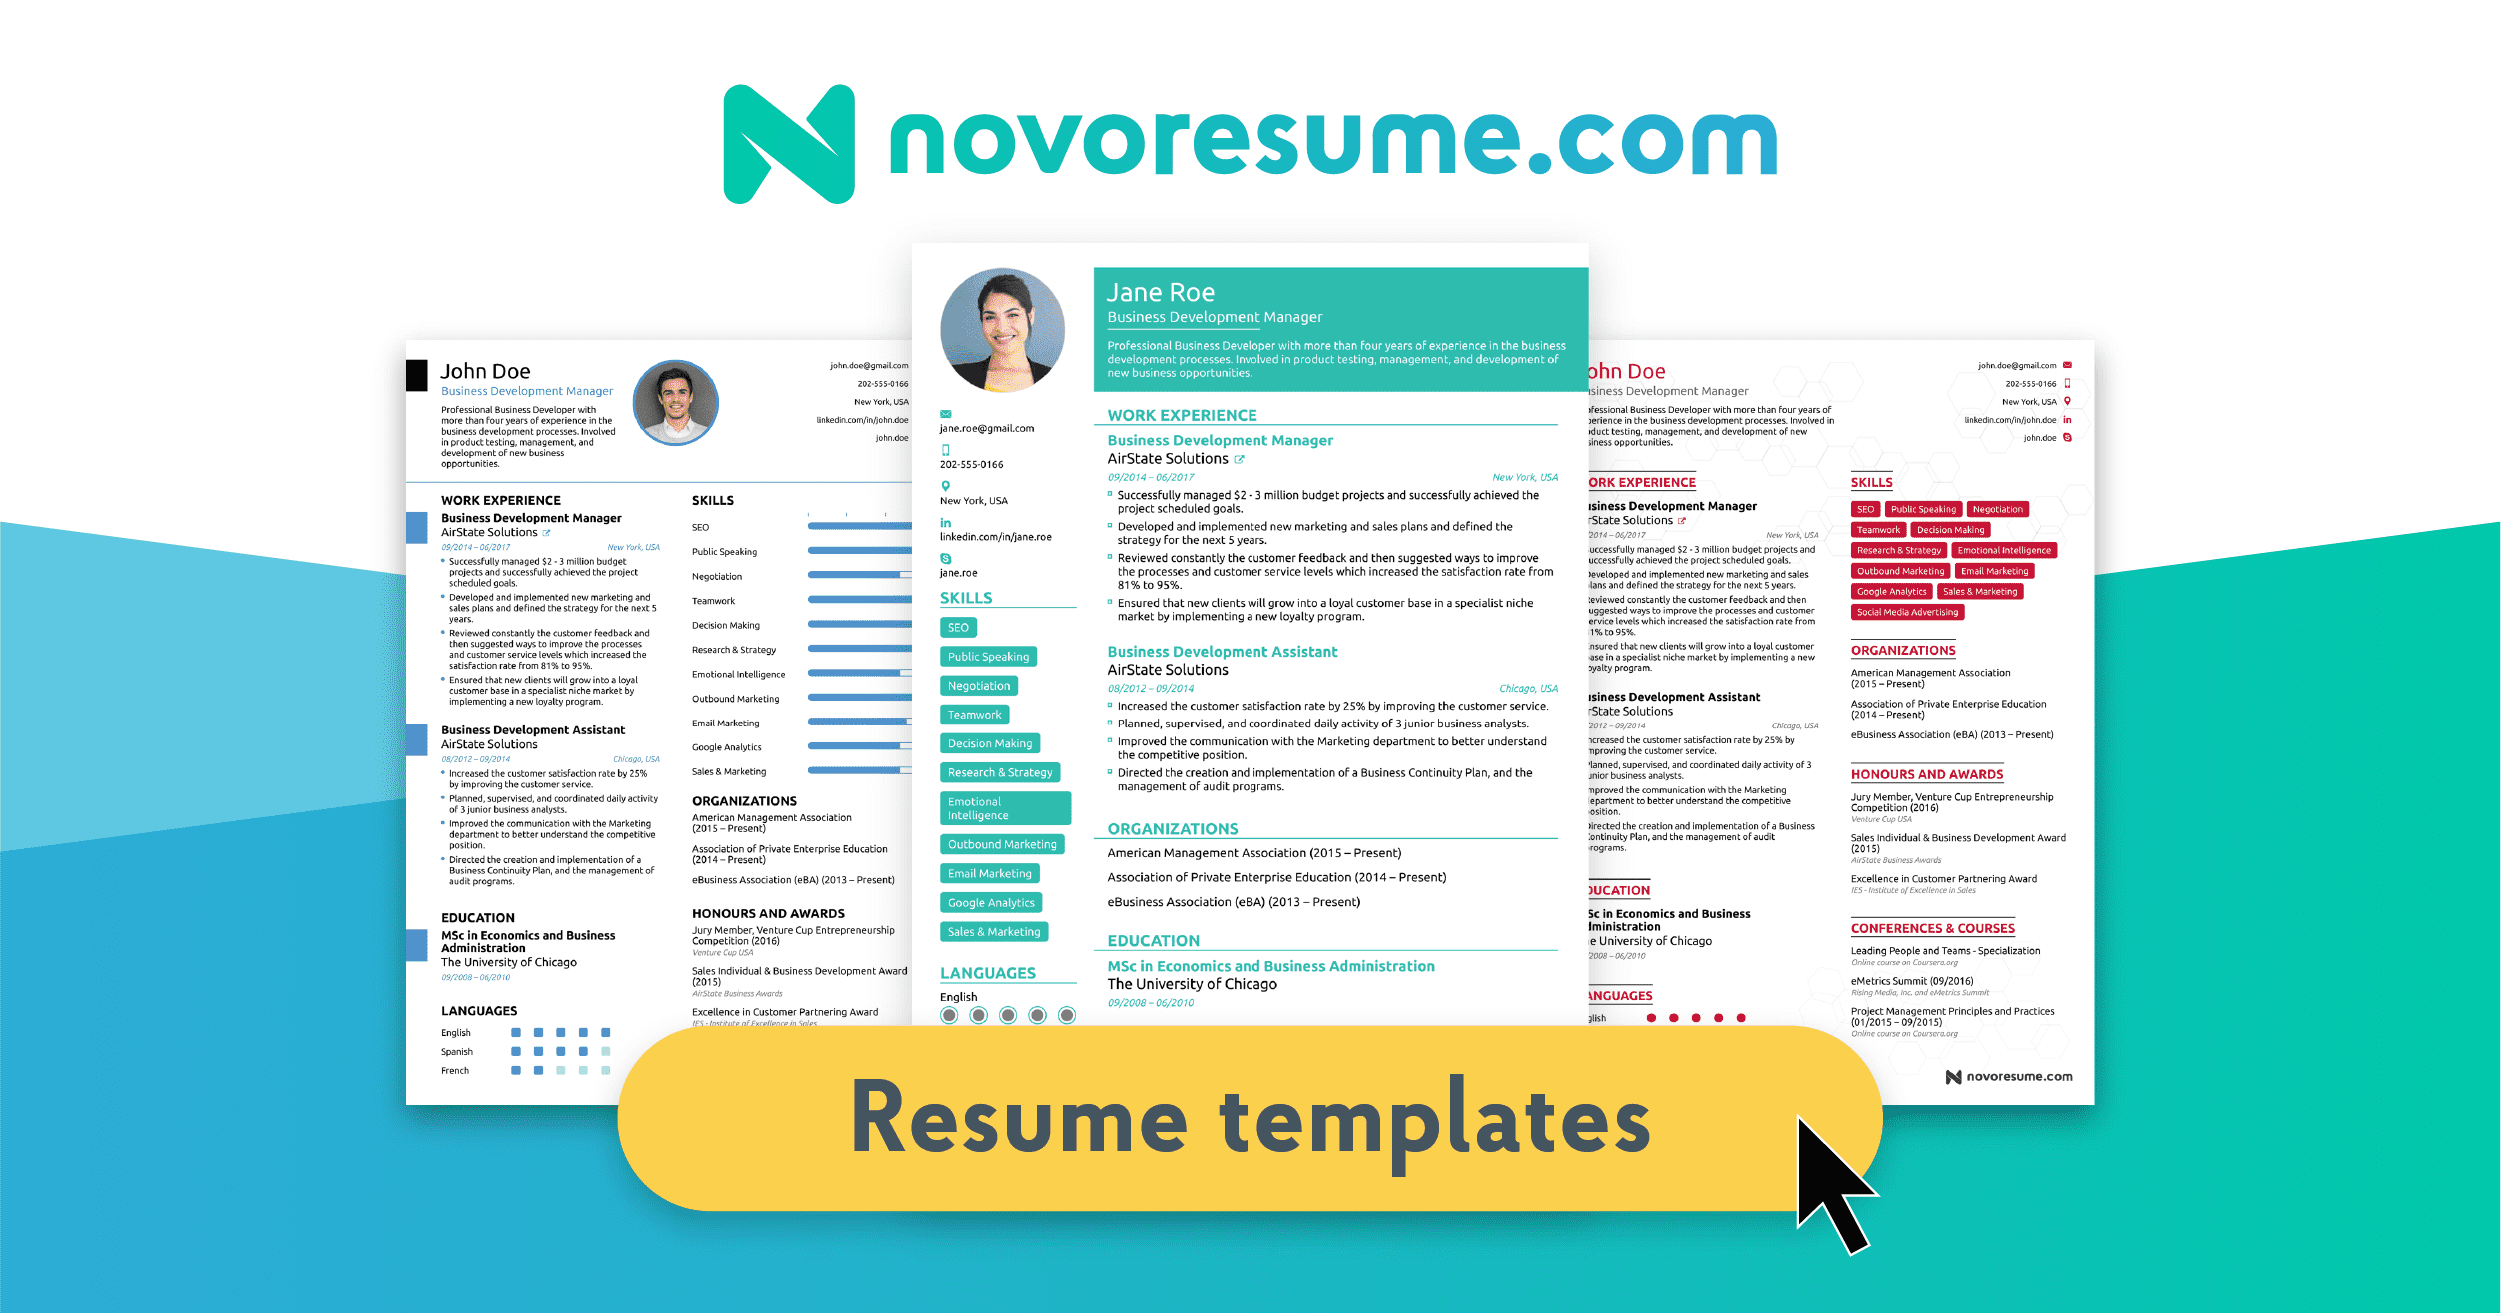 cara membuat CV di novoresume